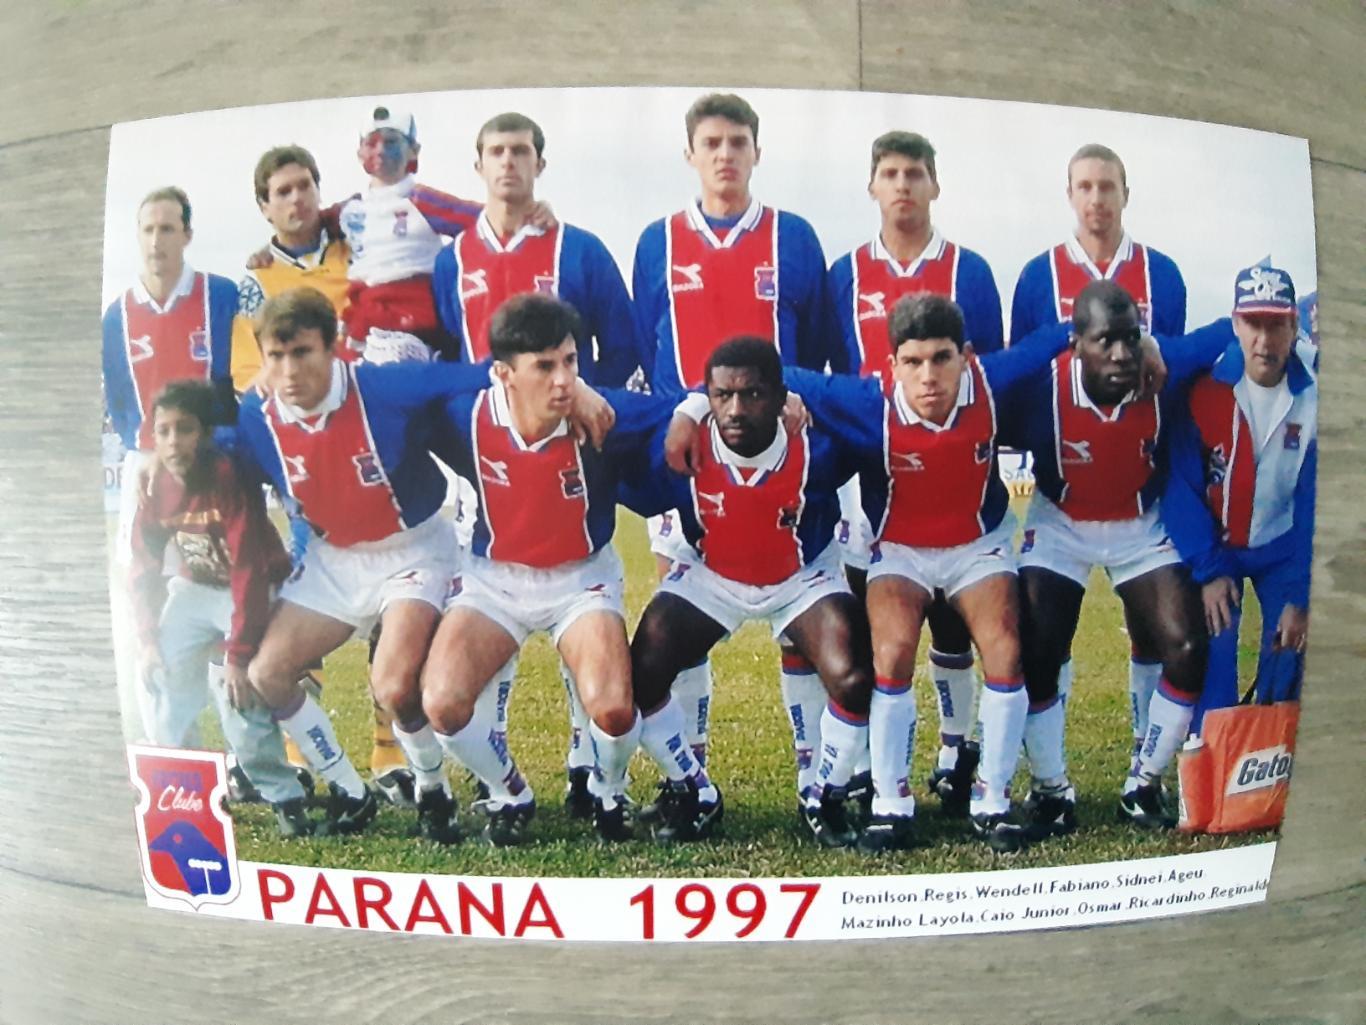 PARANA1997